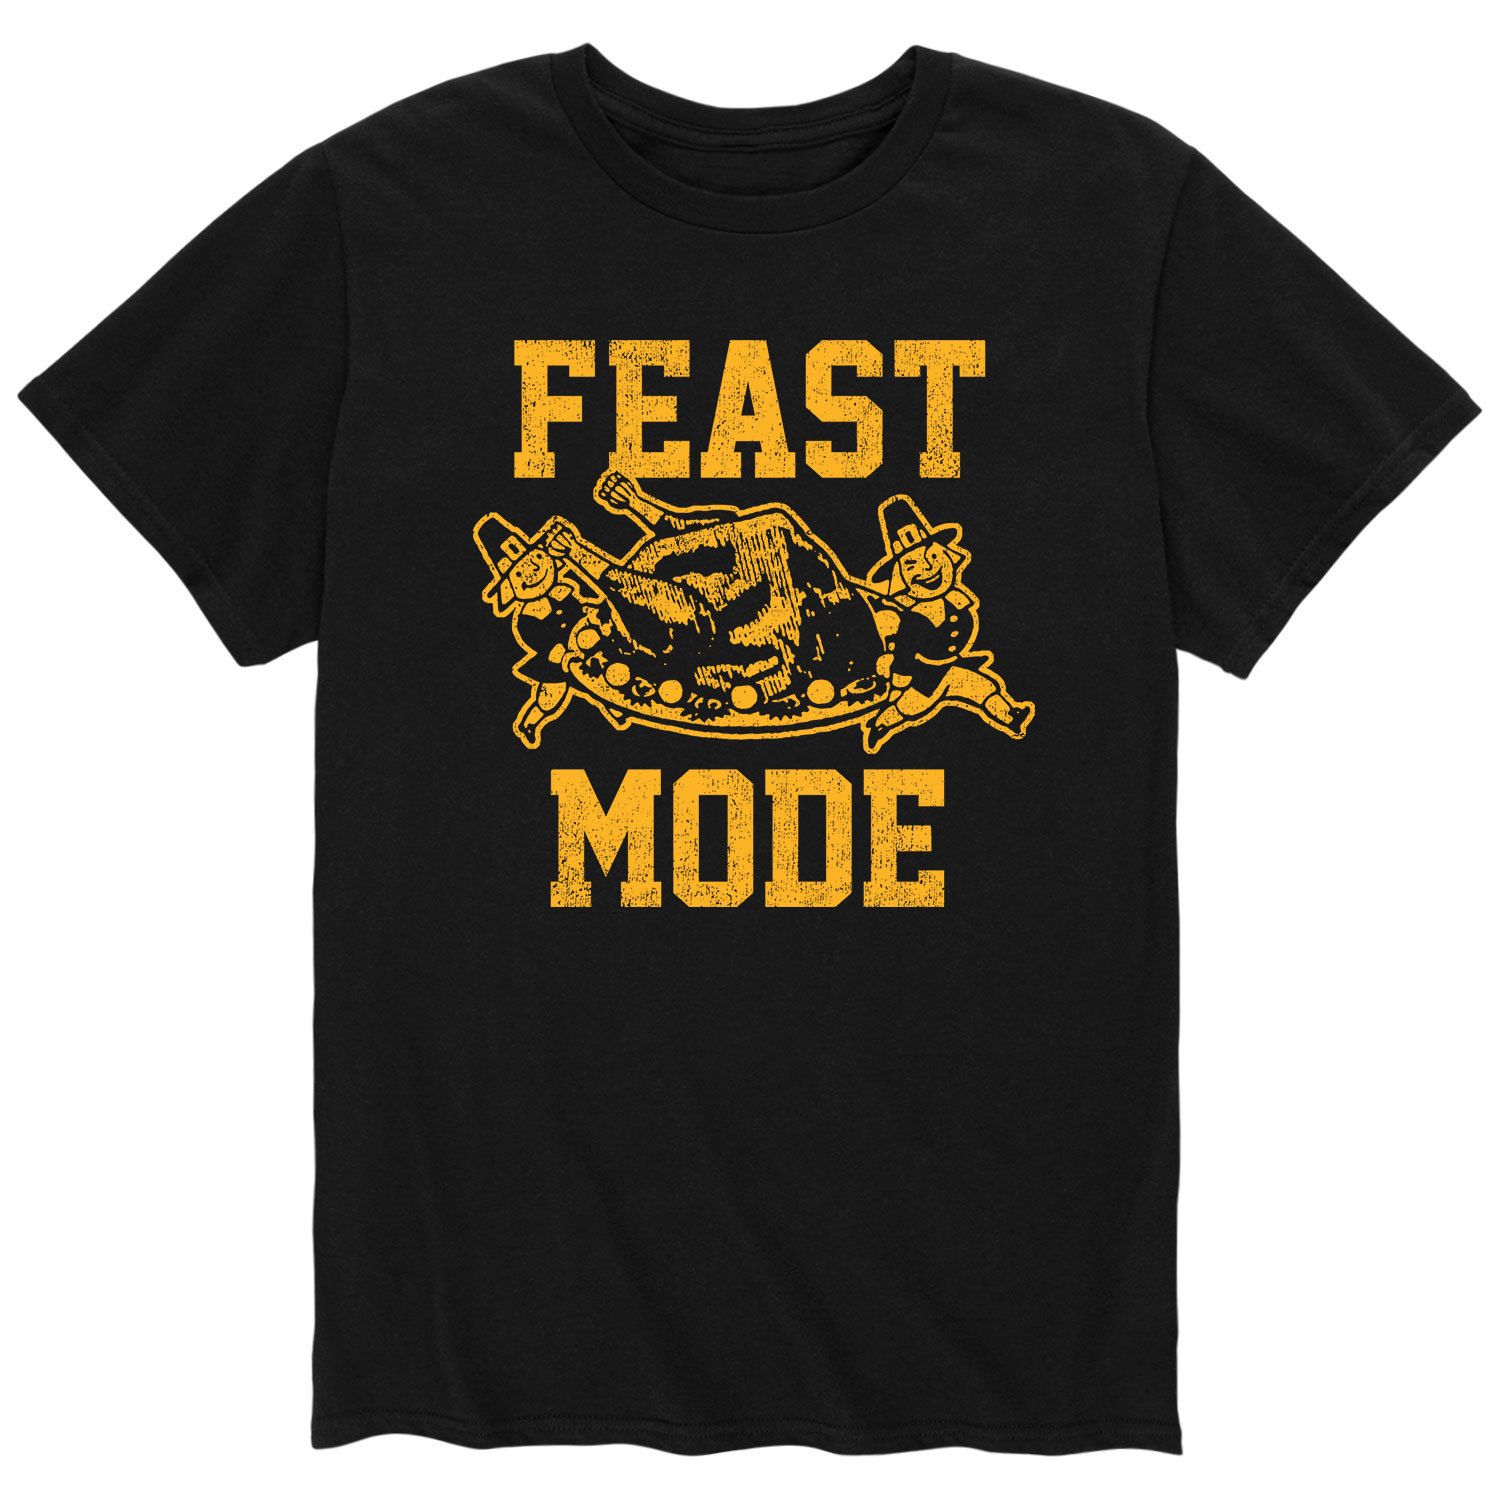 Мужская футболка Feast Mode Licensed Character